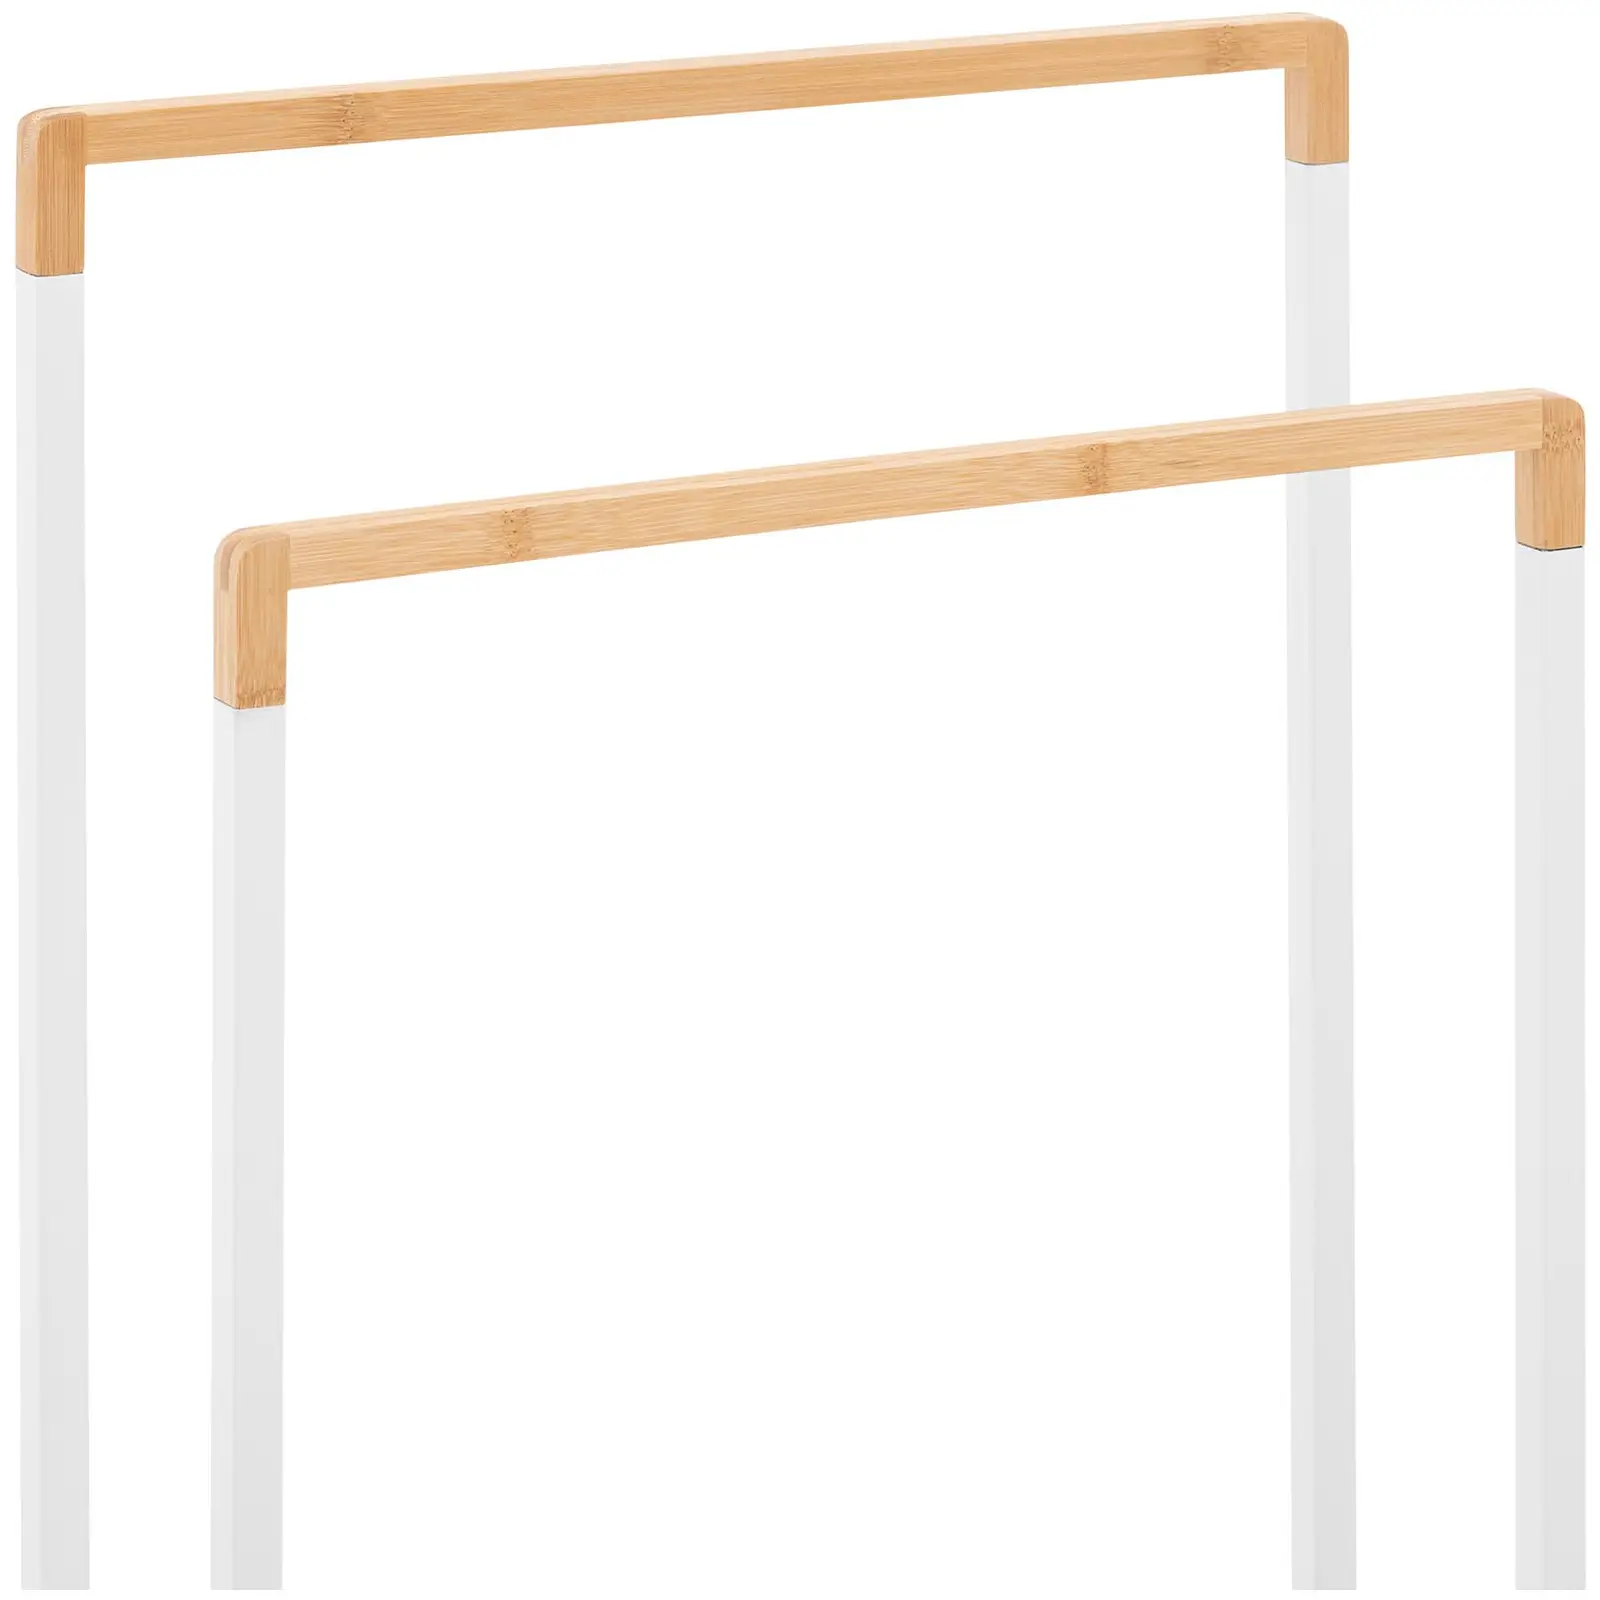 Handtuchhalter - 2 Stangen - Bambus/weiß